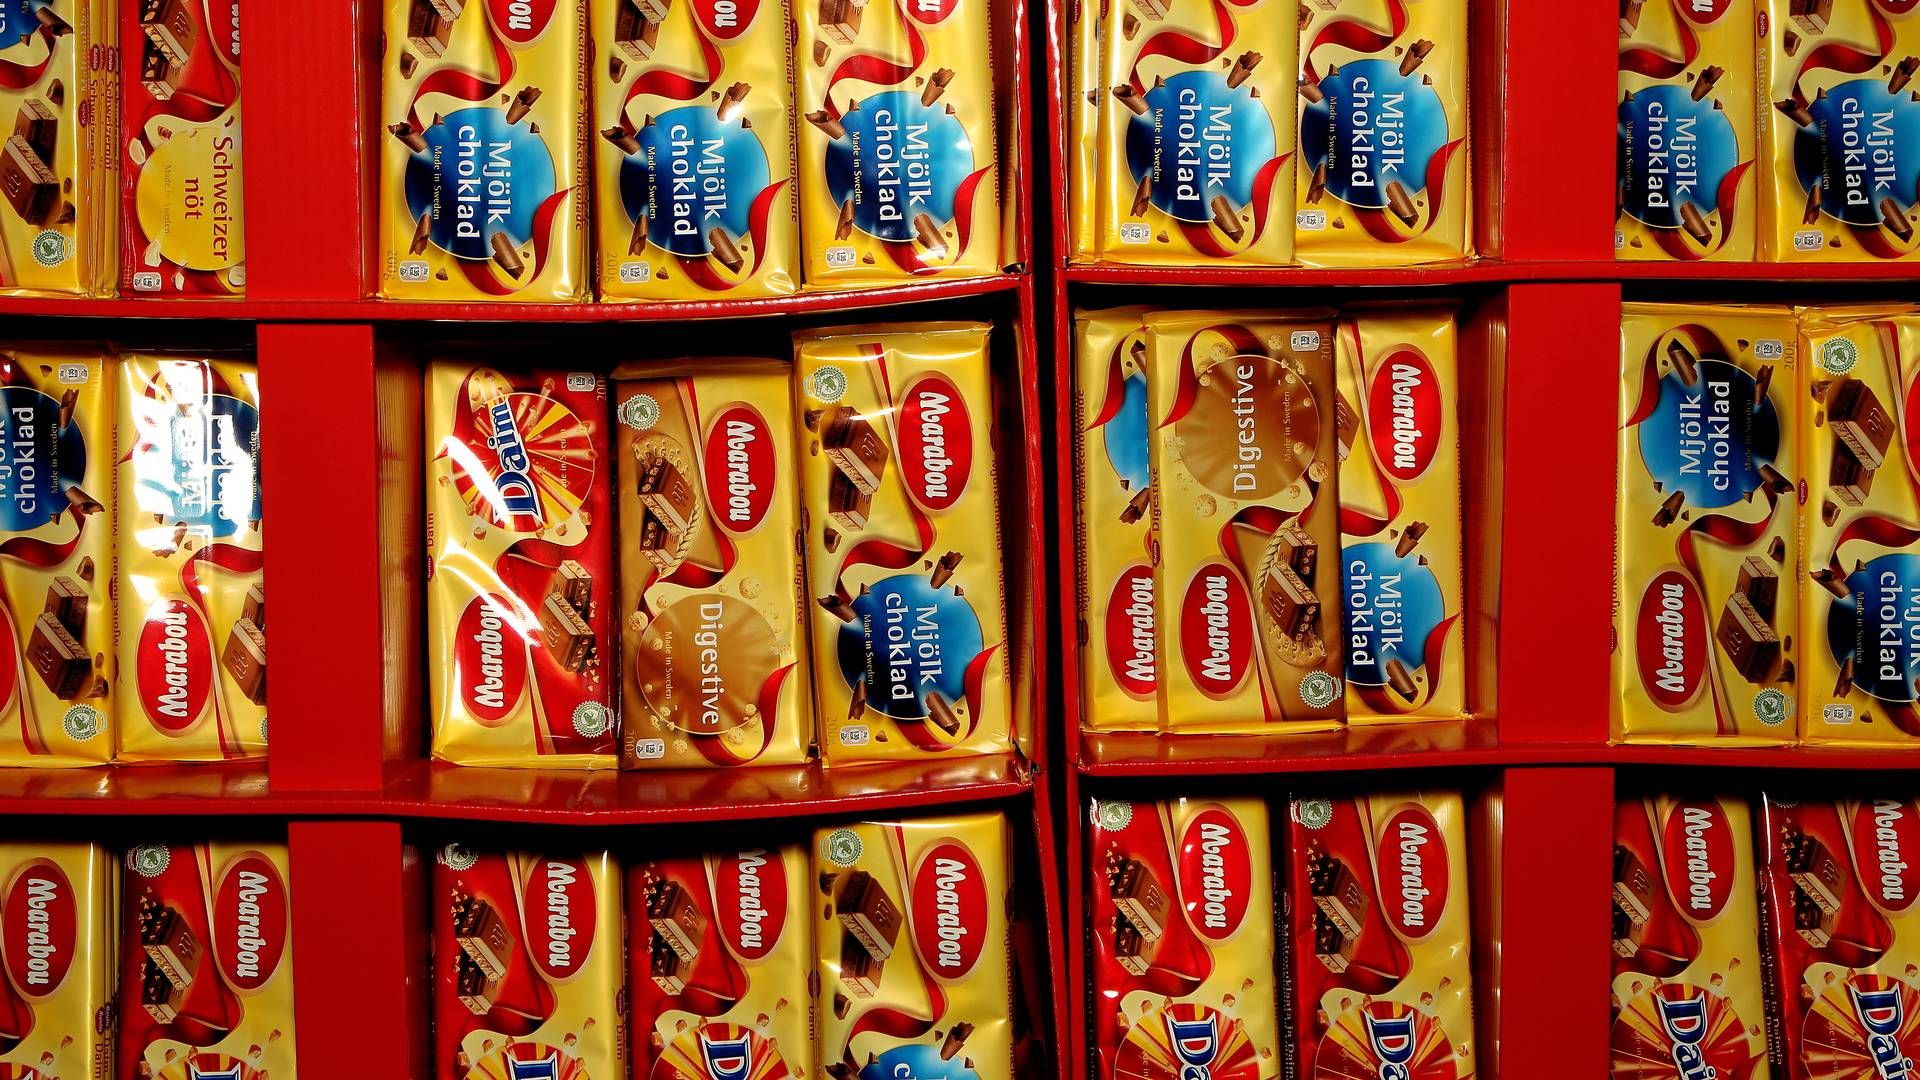 Der ventes tomme hylder i den belgiske supermarkedskæde Colruyt efter en offentlig konflikt med fødevareproducenten Mondelez, der producerer Marabou og en lang række andre chokolader. | Foto: Martin Lehmann